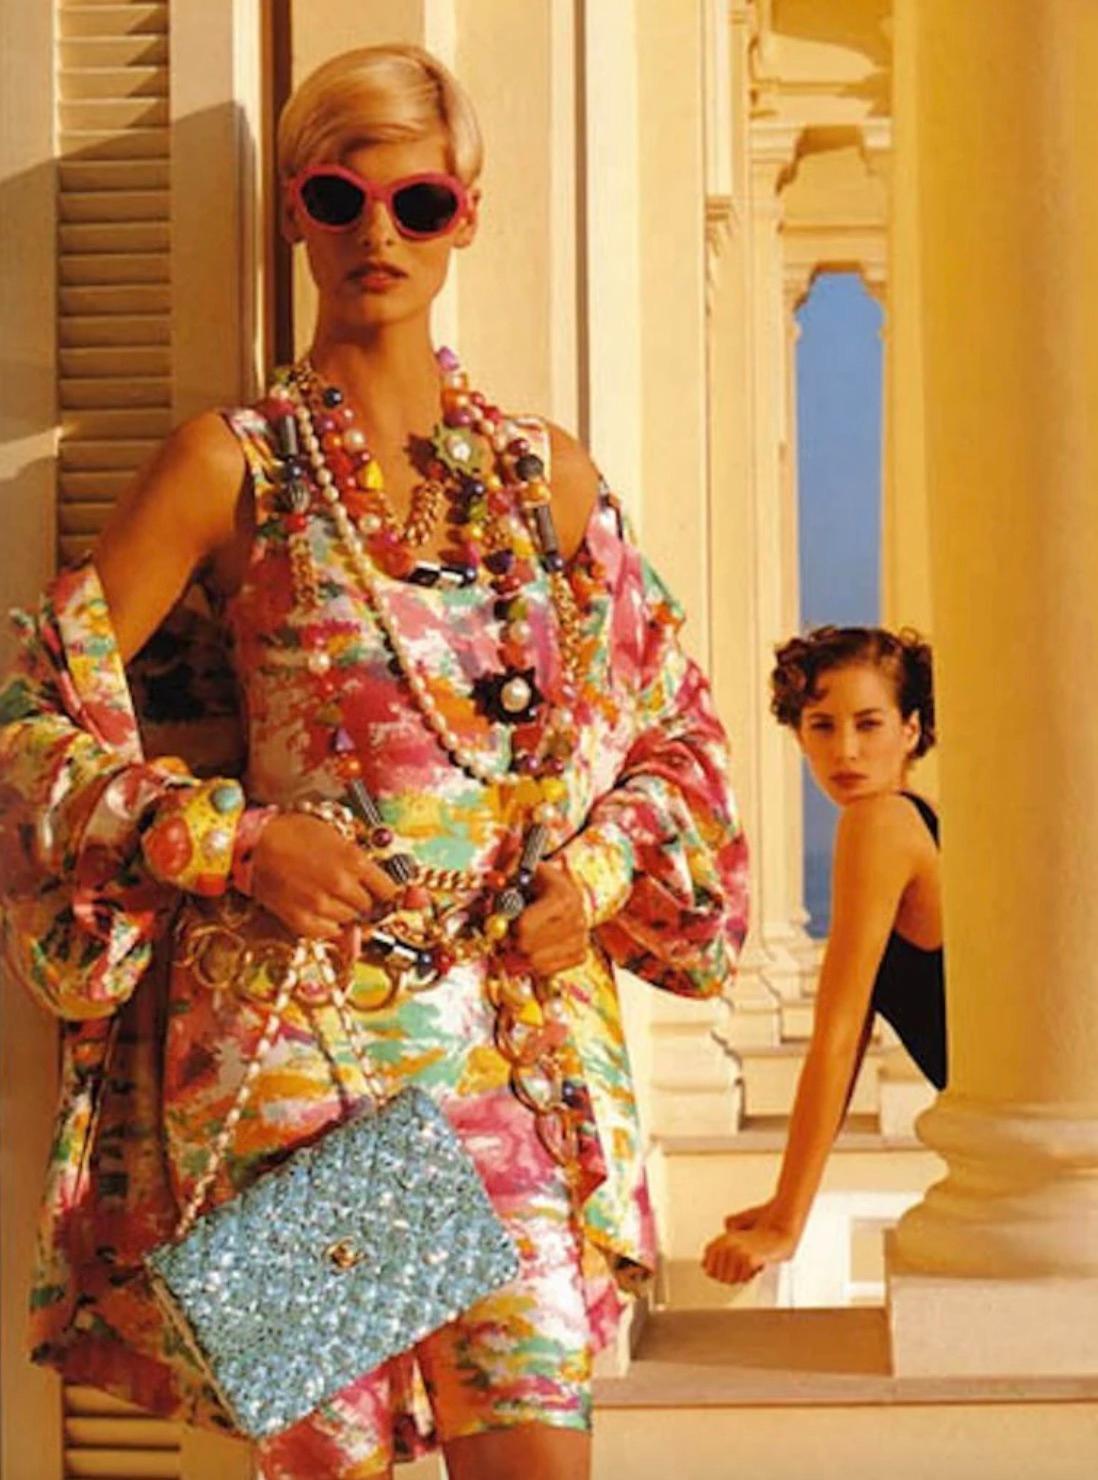 Entdecken Sie ein wahres Schmuckstück: die mittelgroße Chanel-Abendtasche mit Schulterriemen aus der legendären Frühjahr/Sommer-Kollektion 1991, die durch die Werbung mit Linda Evangelista bekannt wurde. Sie ist mit vergoldeten Beschlägen und der